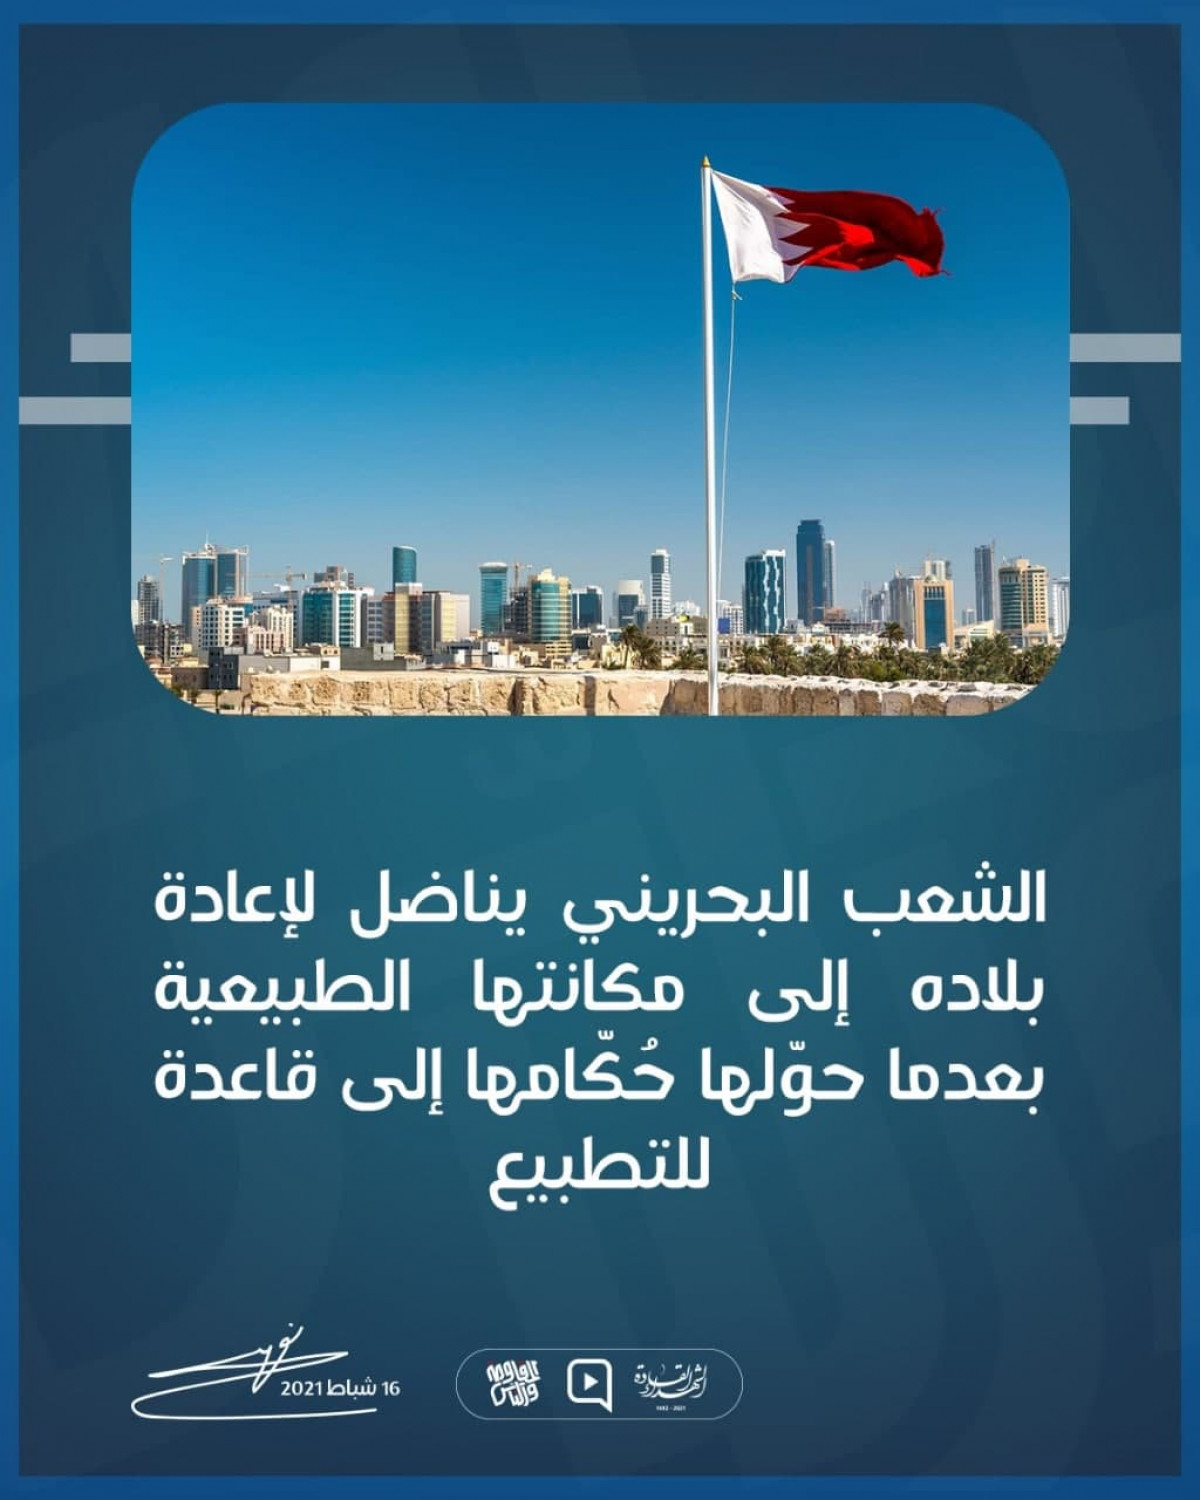 الشعب البحريني يناضل لإعادة بلاده إلى مكانتها الطبيعية